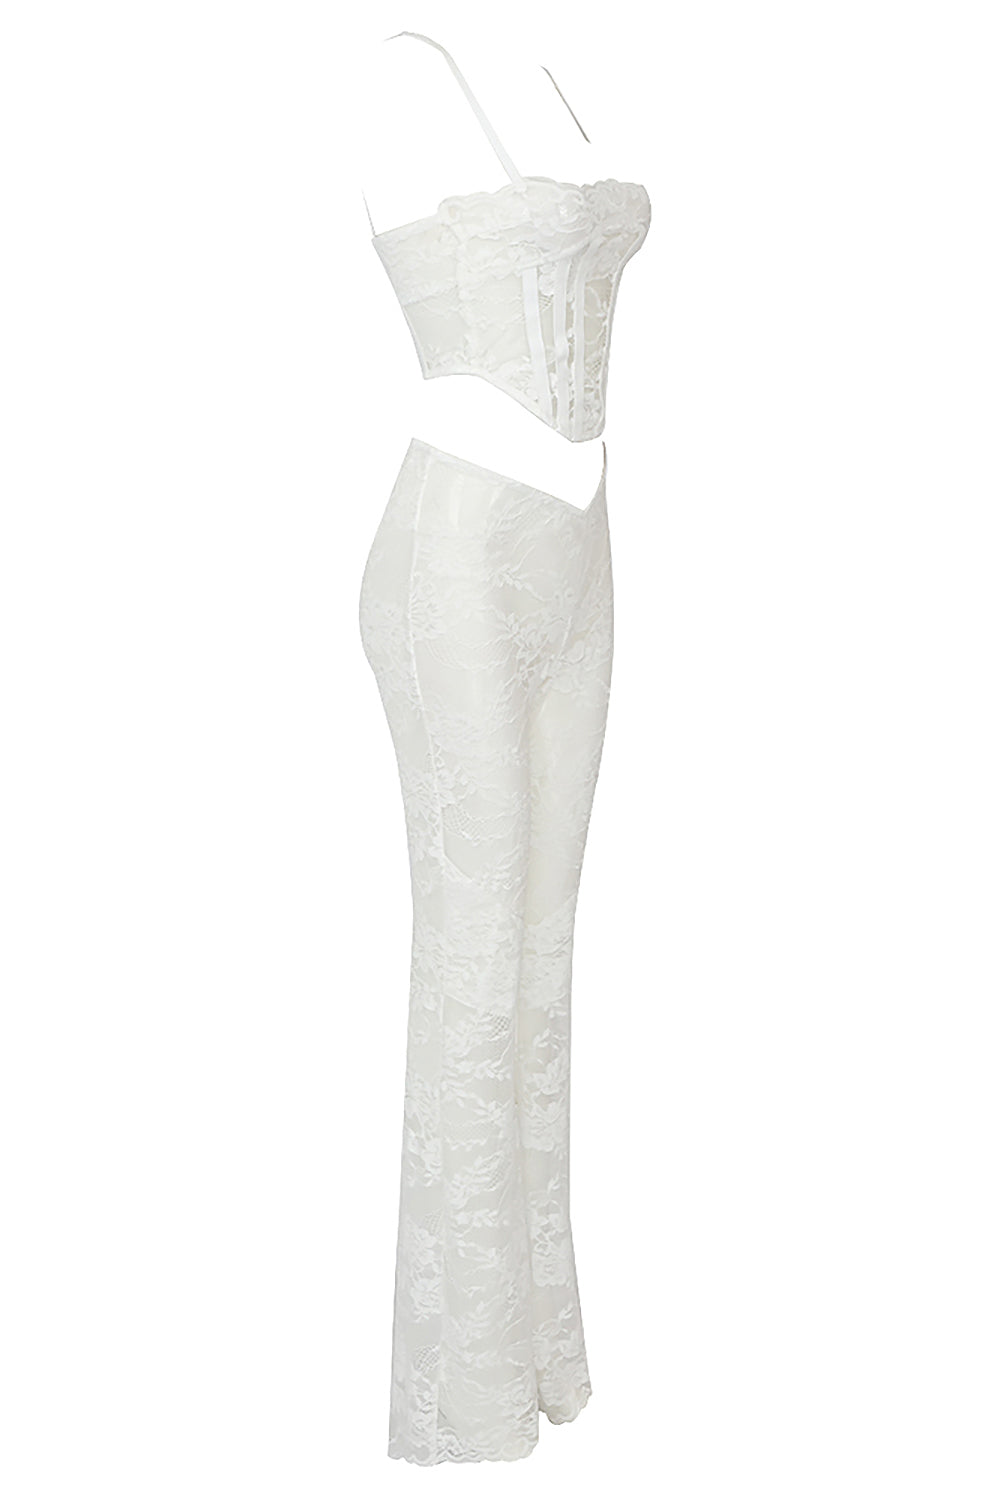 Ensemble trois pièces en dentelle blanche transparente, haut corset, manteau plumeau et pantalon assorti